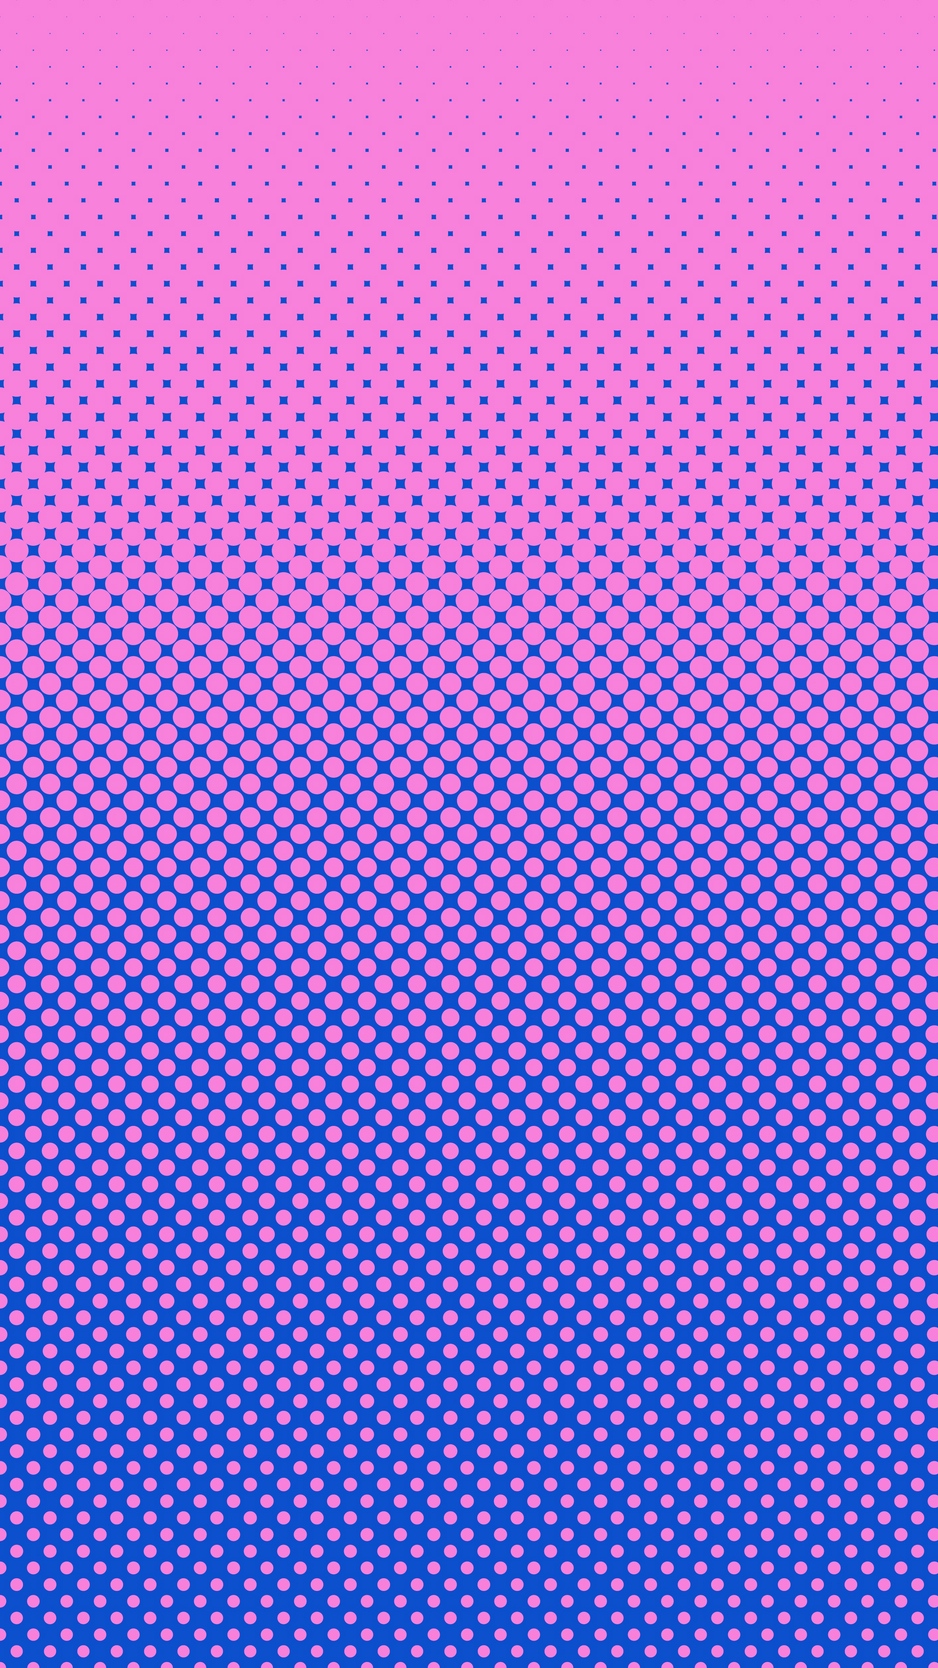 Download wallpaper 938x1668 pixels, circles, gradient, dots, texture